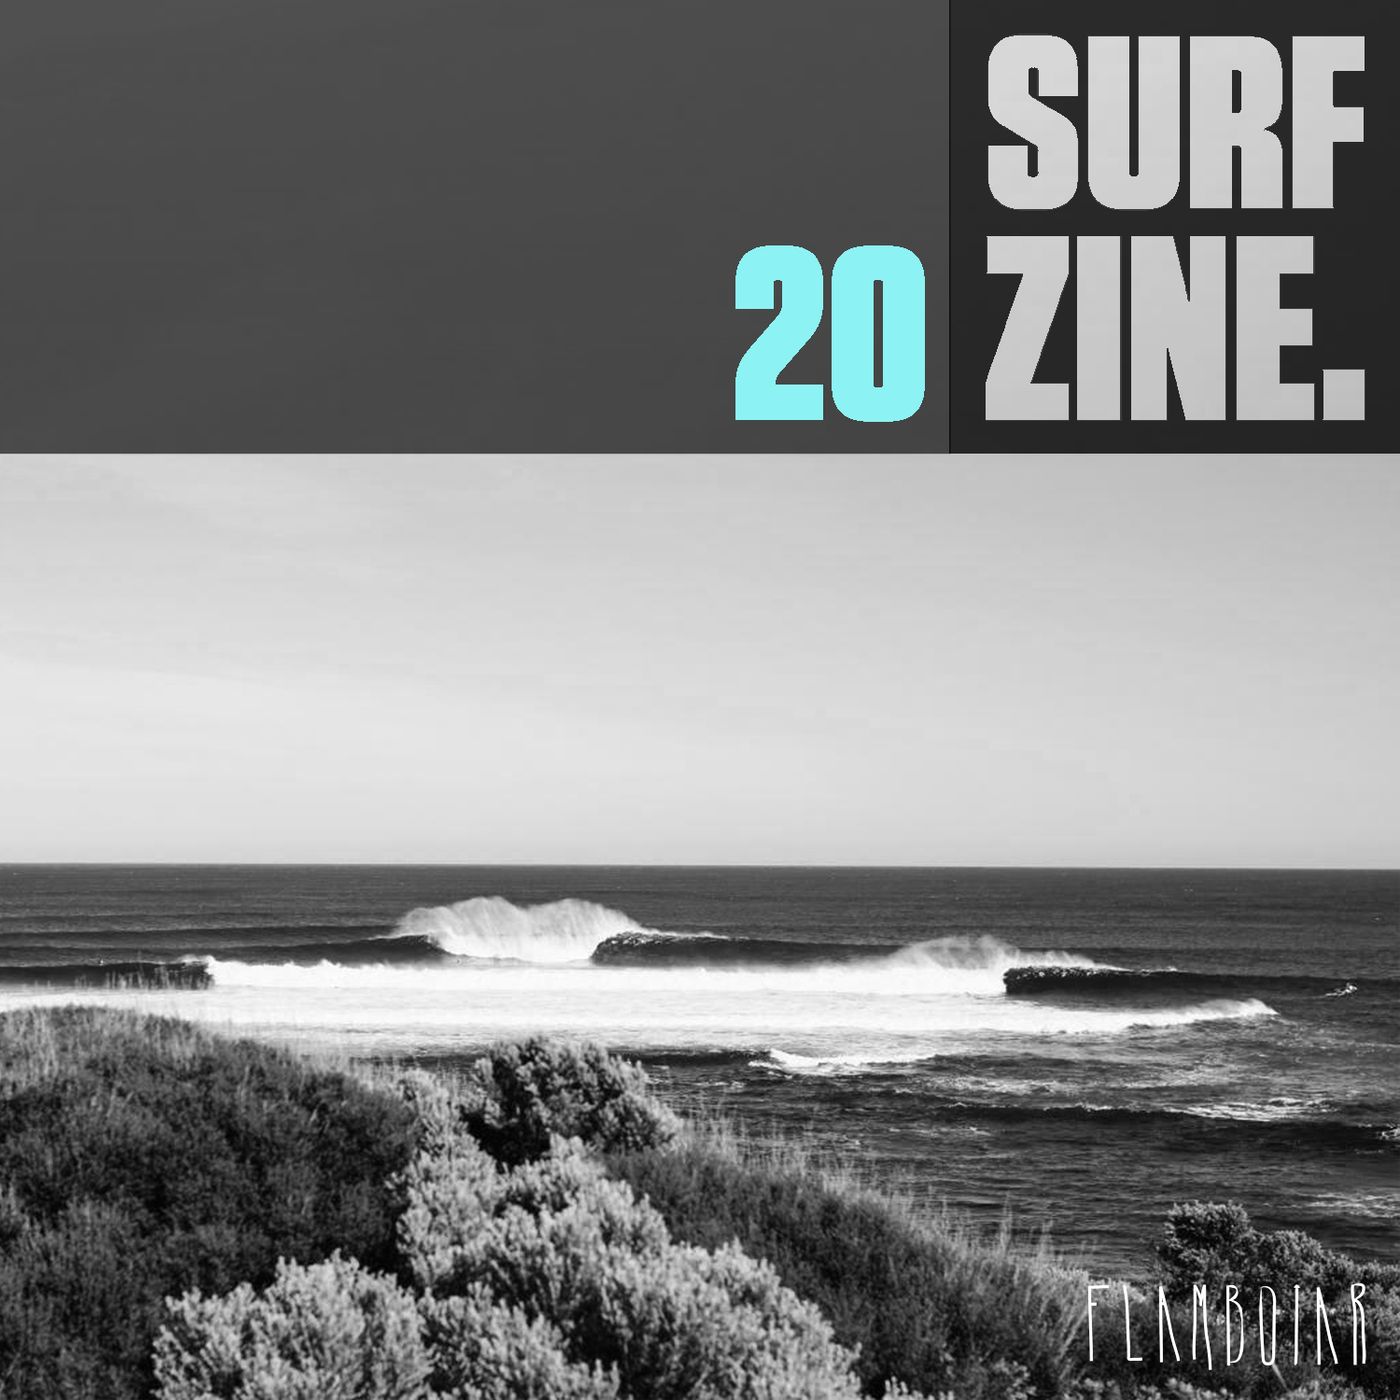 20 - Grand Slam de Surf na Australia e outras notícias da semana